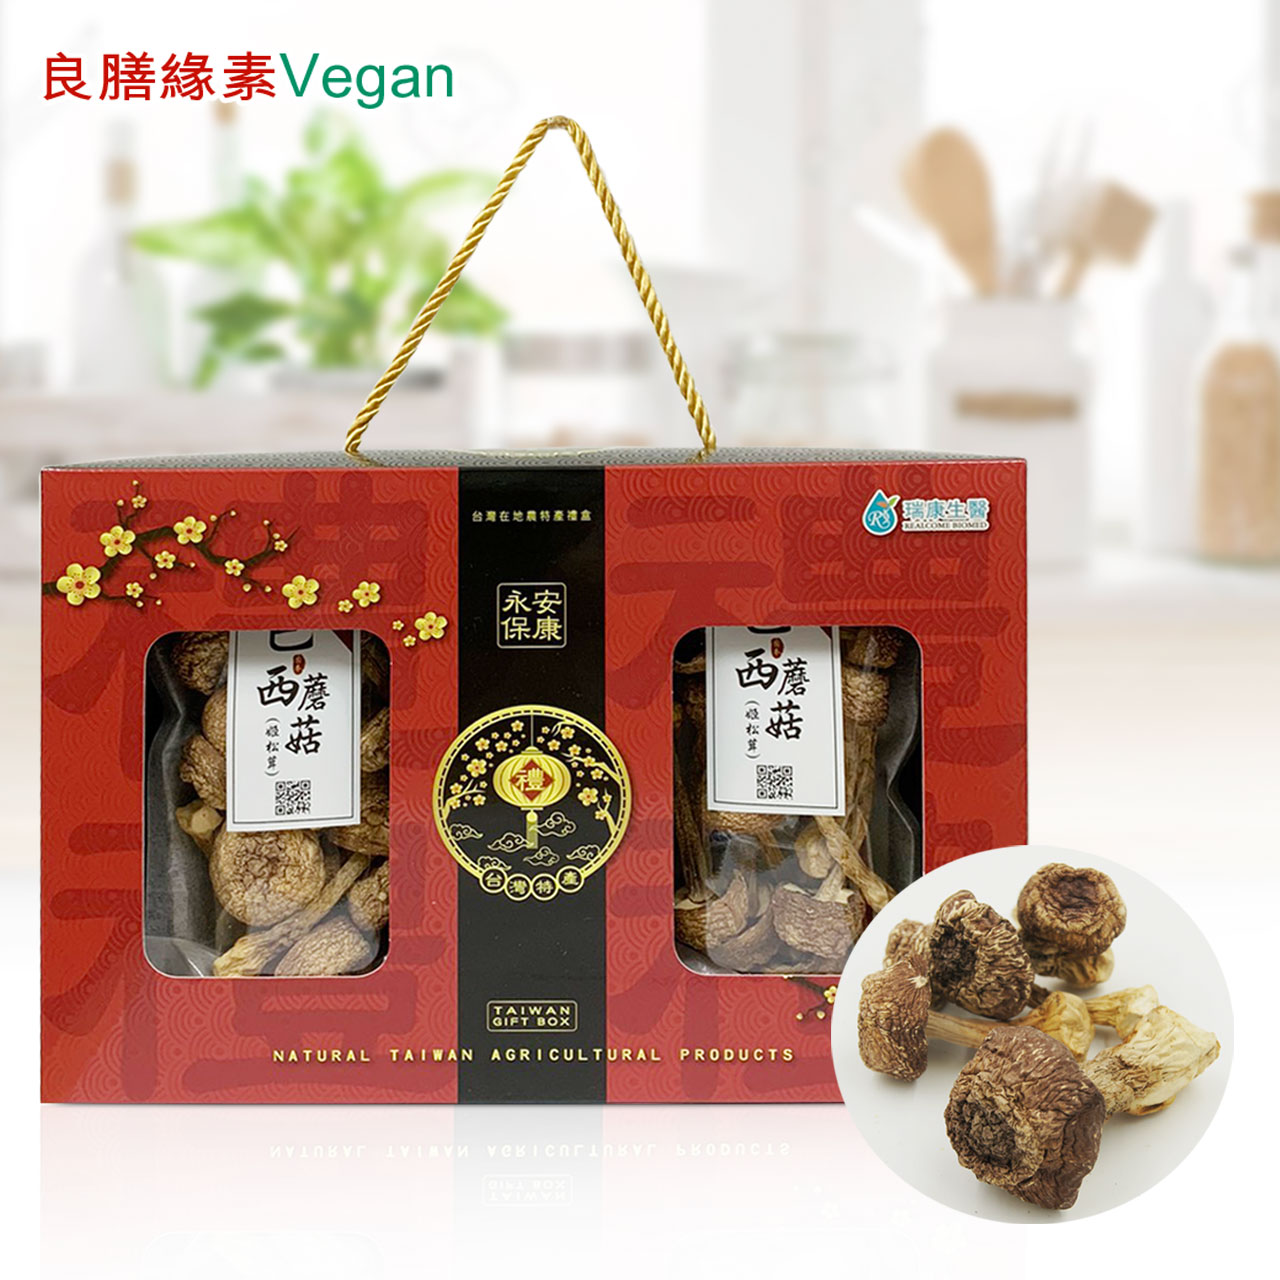 瑞康生醫 - 台灣巴西蘑菇(姬松茸)80g乾菇禮盒